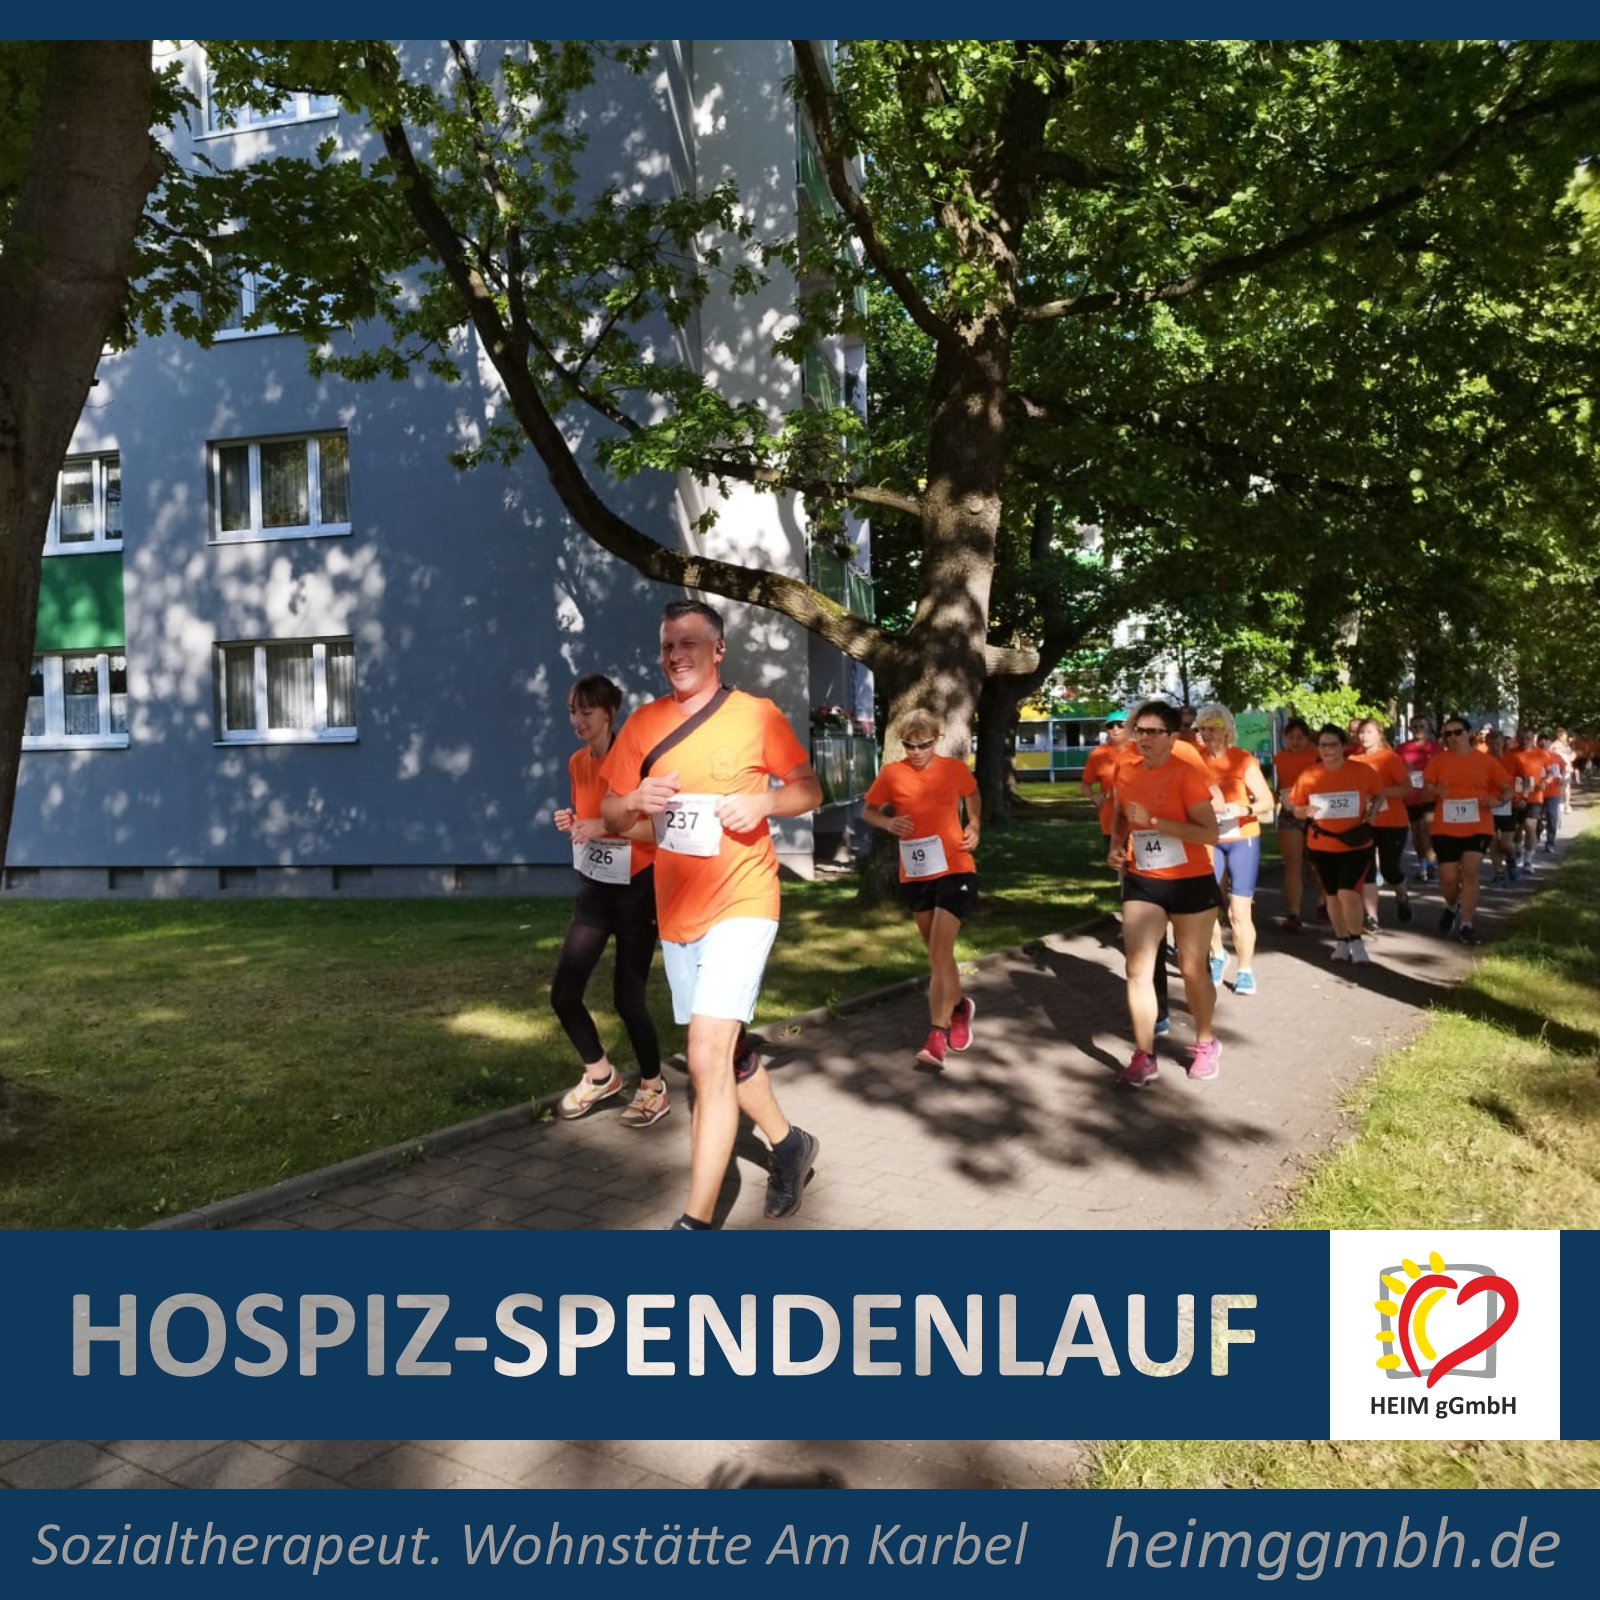 Das Team der heim gemeinnützige GmbH der Sozialtherapeutischen Wohnstätte am karbel beim 20. Hospiz-Spendenlauf in Chemnitz